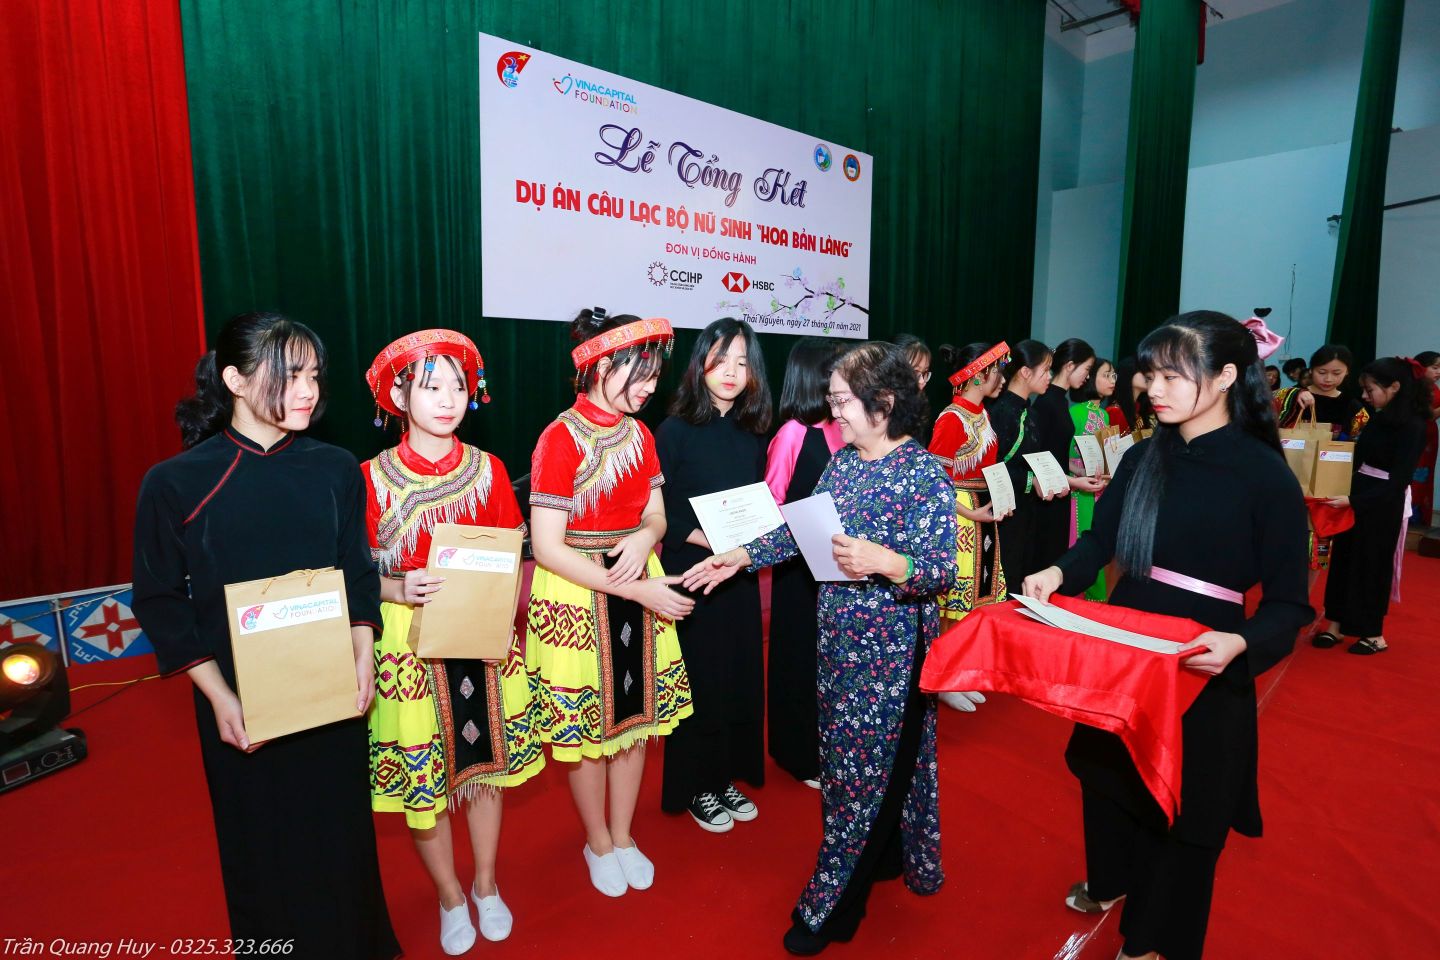 Bà Trương Mỹ Hoa trao giấy chứng nhận và quà cho các nữ sinh CLB VinaCapital Foundation và Quỹ học bổng Vừ A Dính công bố kết quả dự án Hoa bản làng